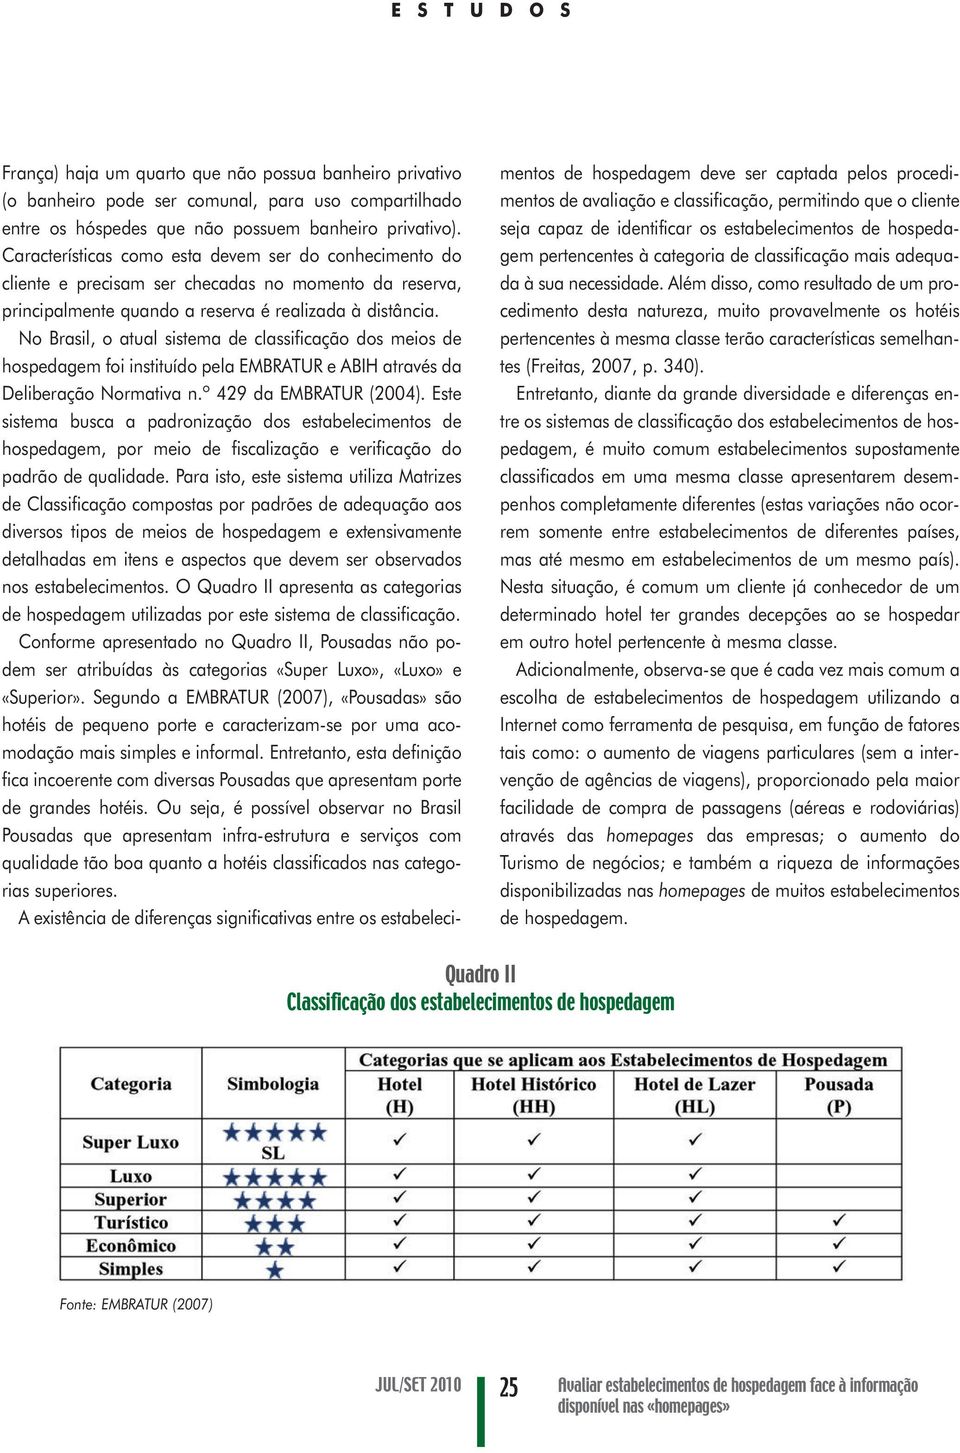 No Brasil, o atual sistema de classificação dos meios de hospedagem foi instituído pela EMBRATUR e ABIH através da Deliberação Normativa n.º 429 da EMBRATUR (2004).